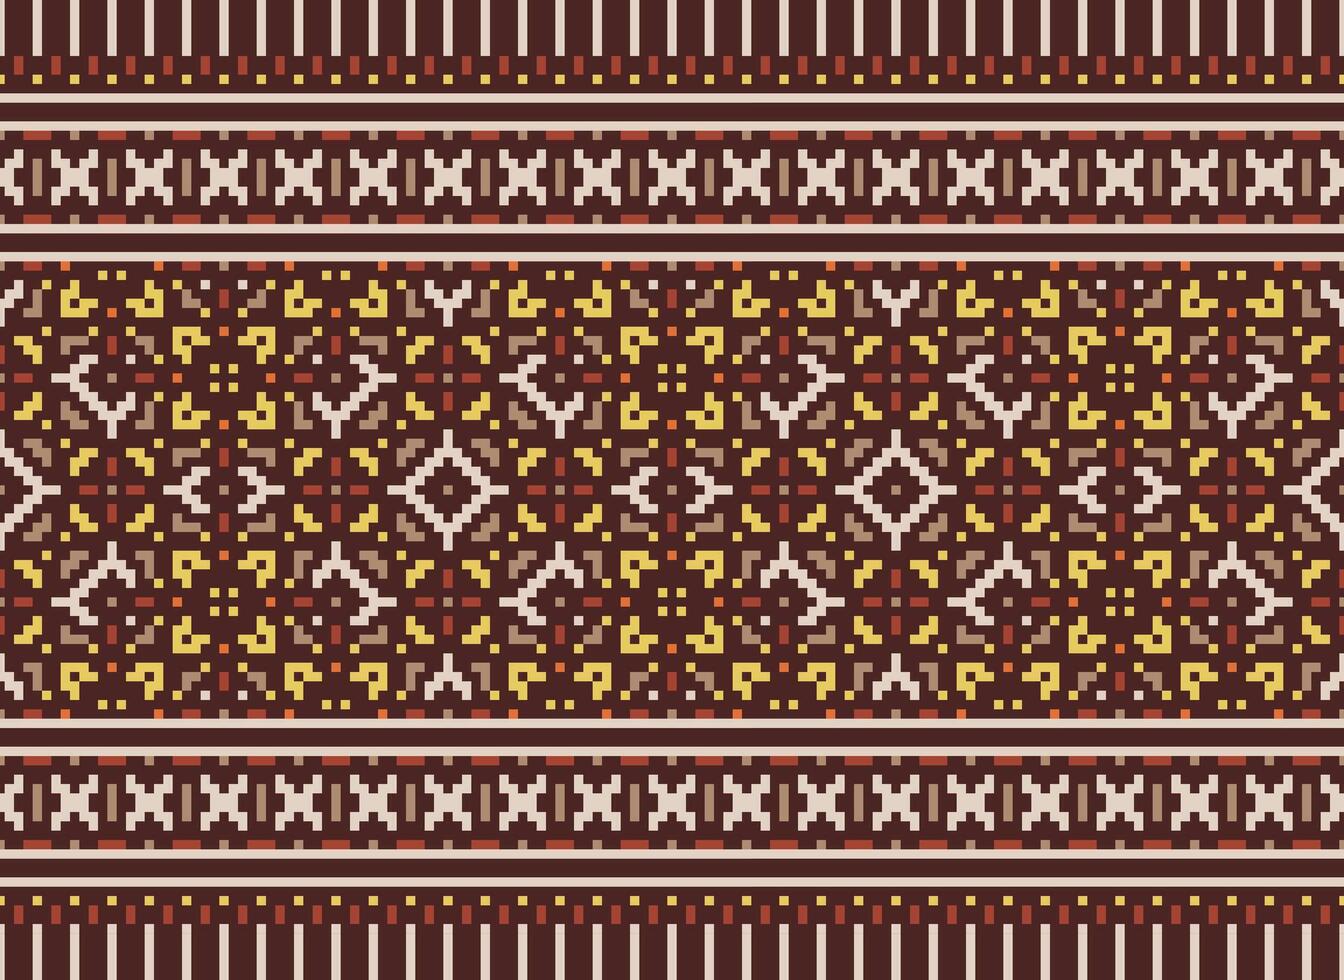 pixel etnisk mönster vektor bakgrund. sömlös mönster traditionell, design för bakgrund, tapet, batik, tyg, matta, Kläder, omslag, och textil.etnisk mönster vektor illustration.